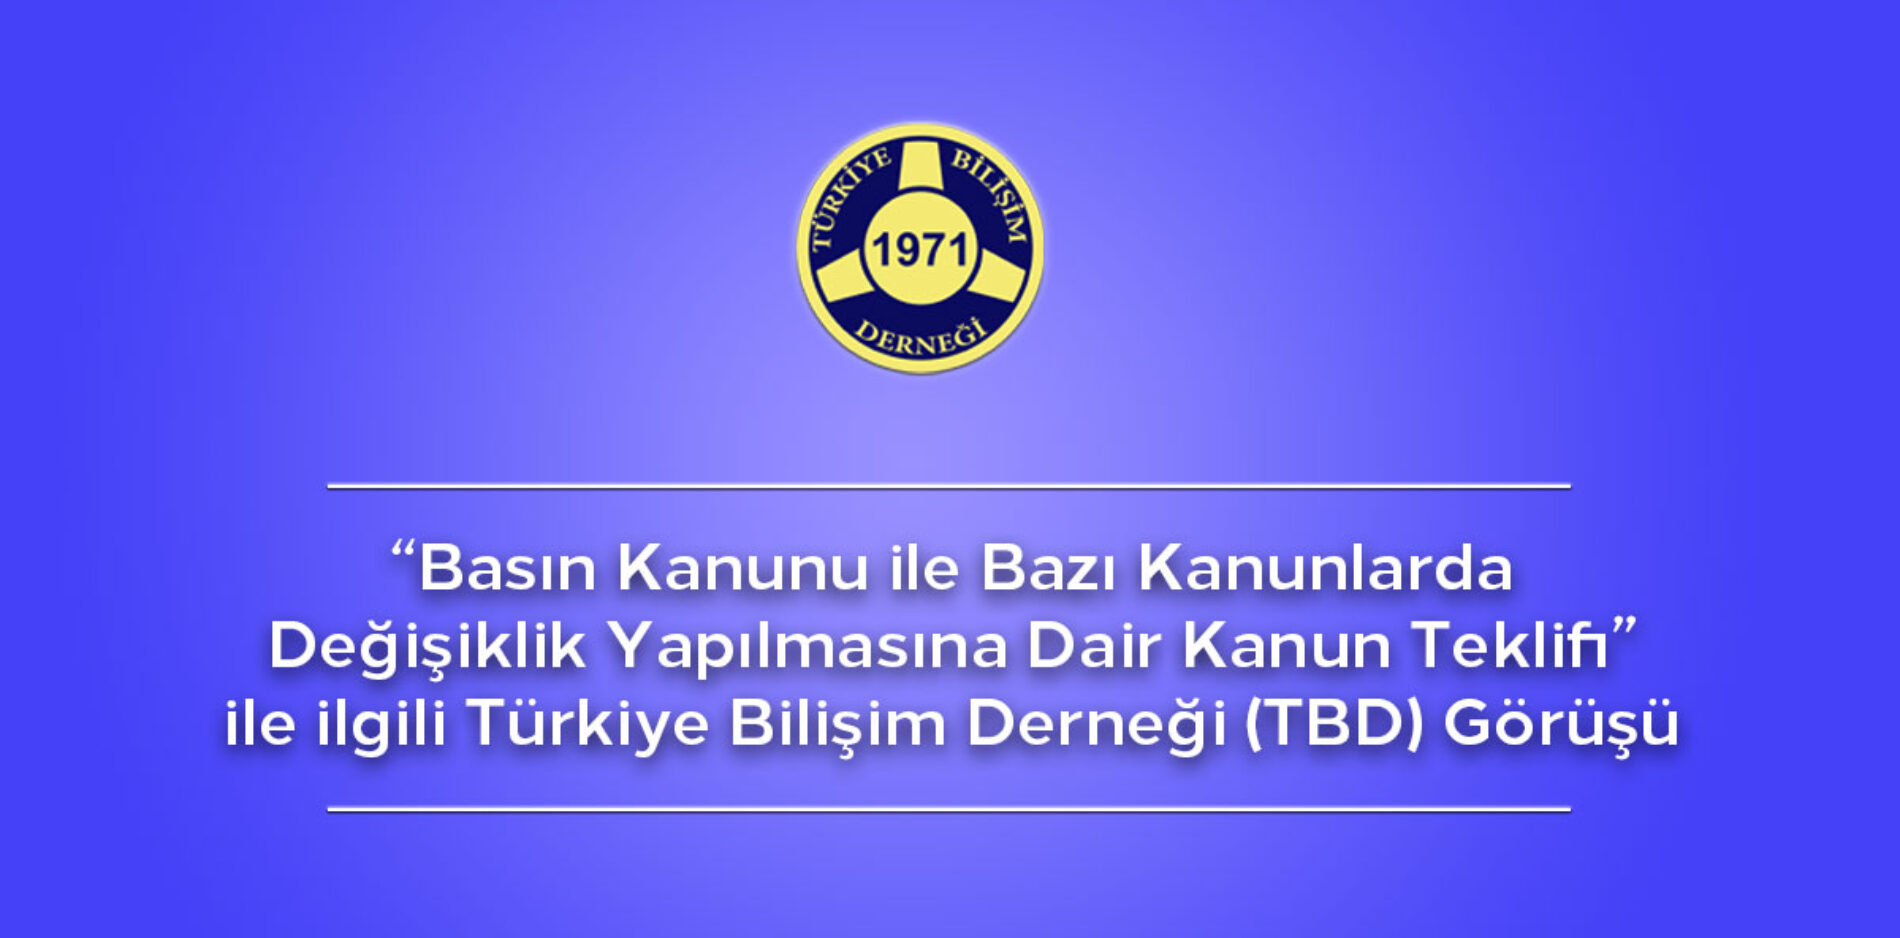 Basın Kanunu ile Bazı Kanunlarda Değişiklik Yapılmasına Dair Kanun Teklifi ile ilgili Türkiye Bilişim Derneği (TBD) Görüşü